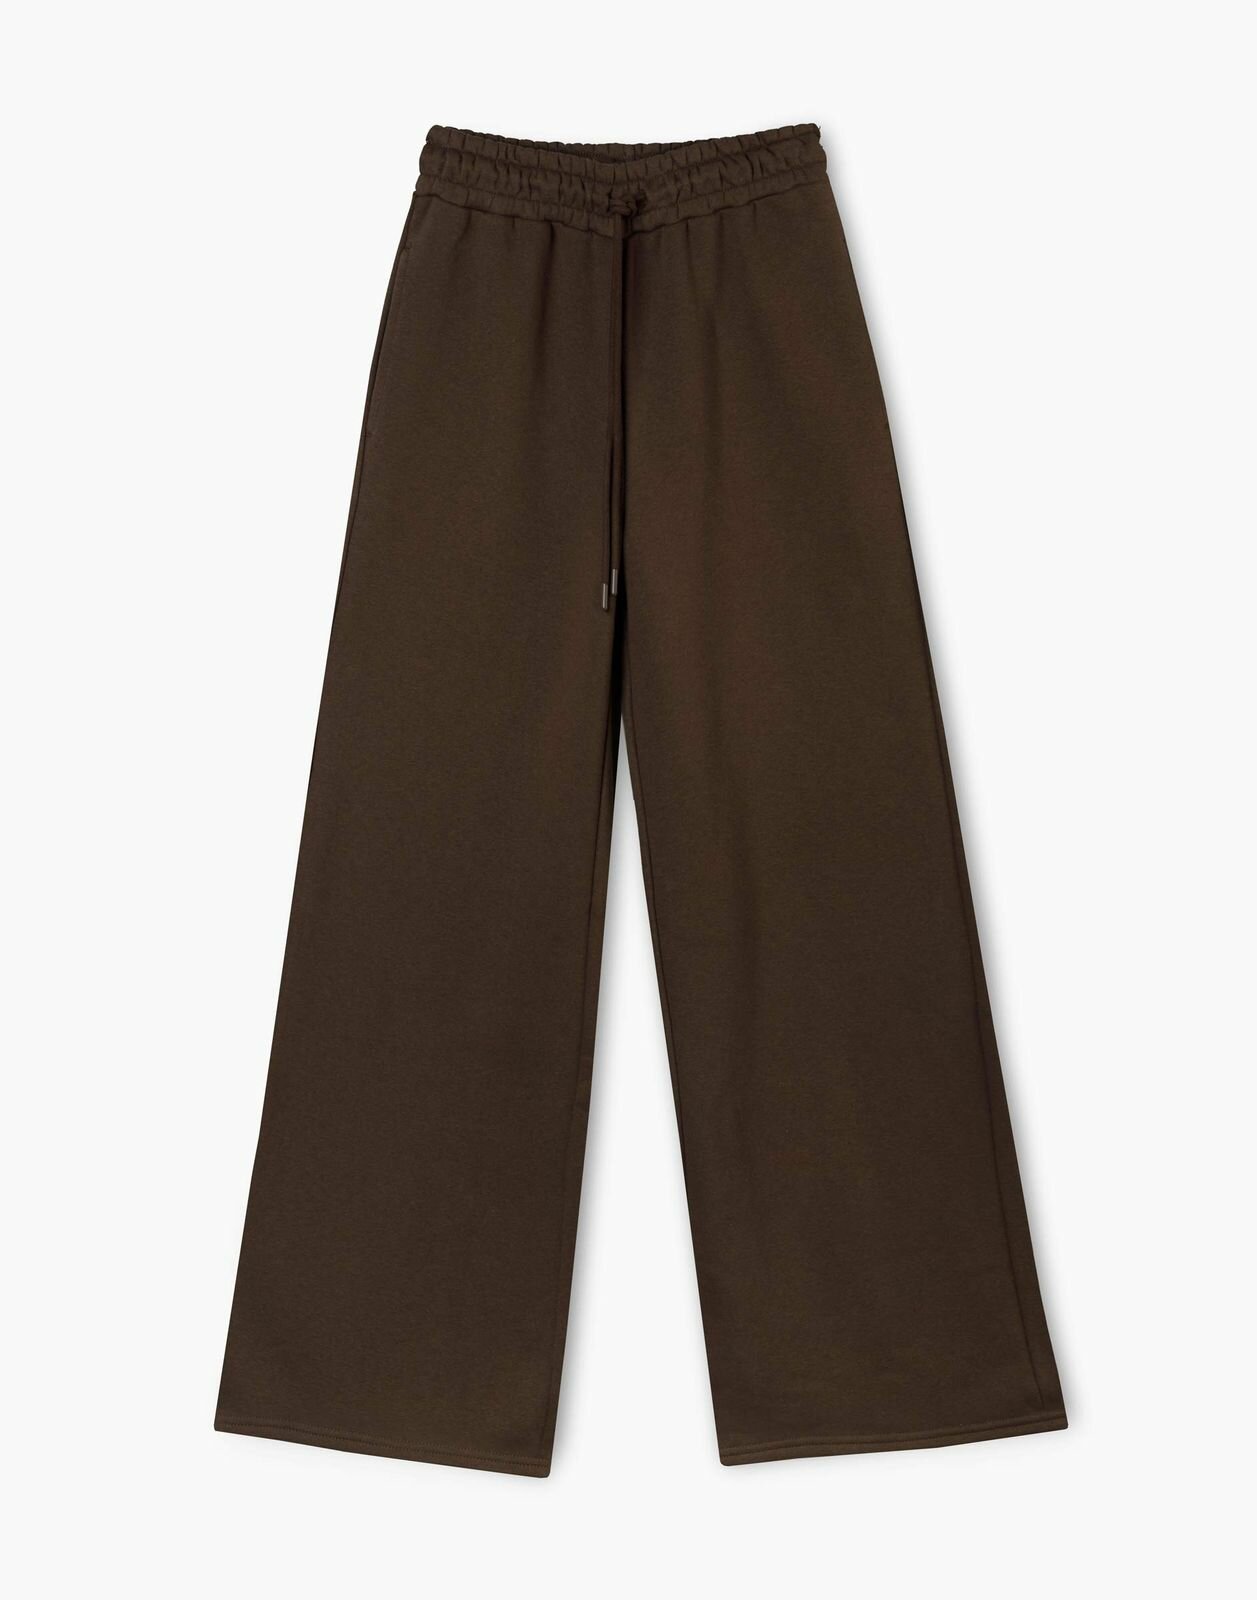 Спортивные брюки Gloria Jeans GAC021416 темно-коричневый женский M/164 (44-46)